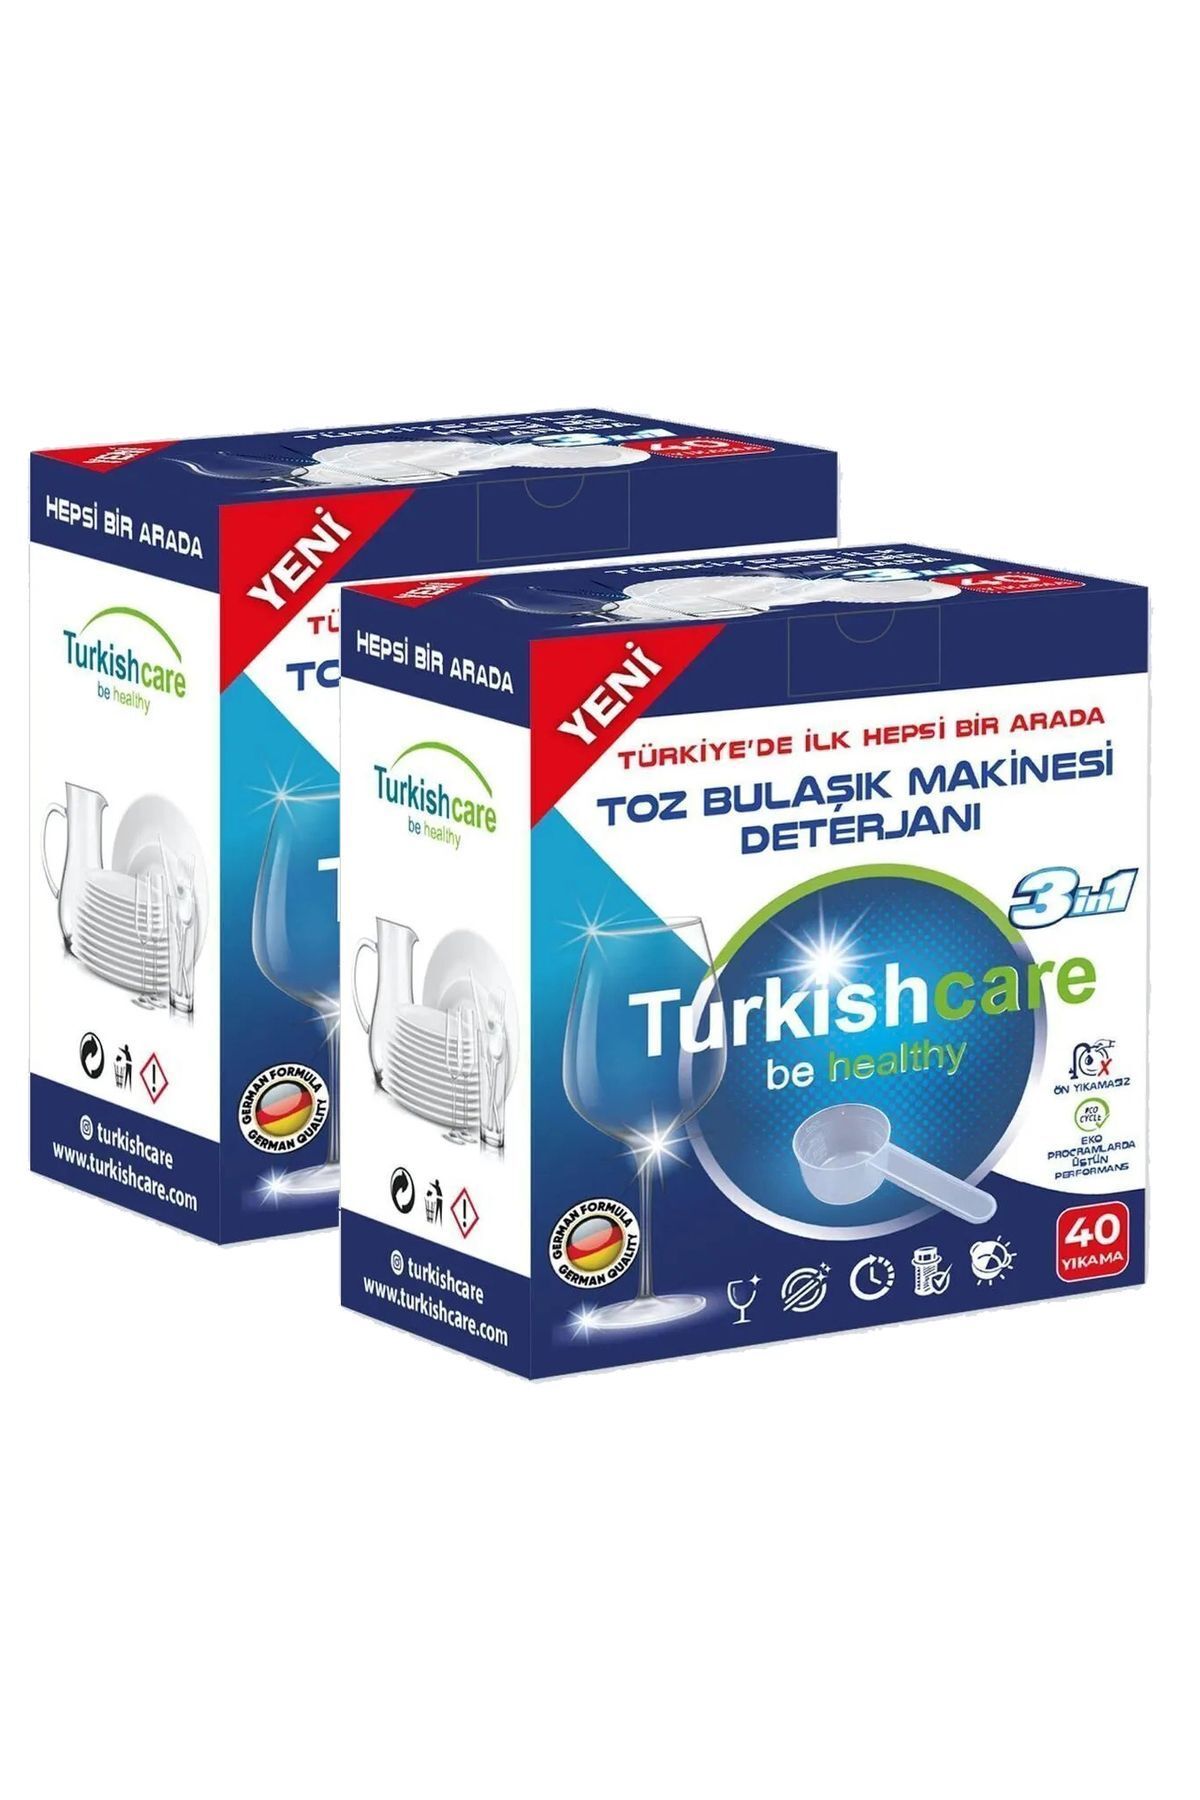 Turkishcare Ekonomik Hepsi Bir Arada Bulaşık Makinesi Tablet Deterjanı Toz 40x2 80 Yıkama